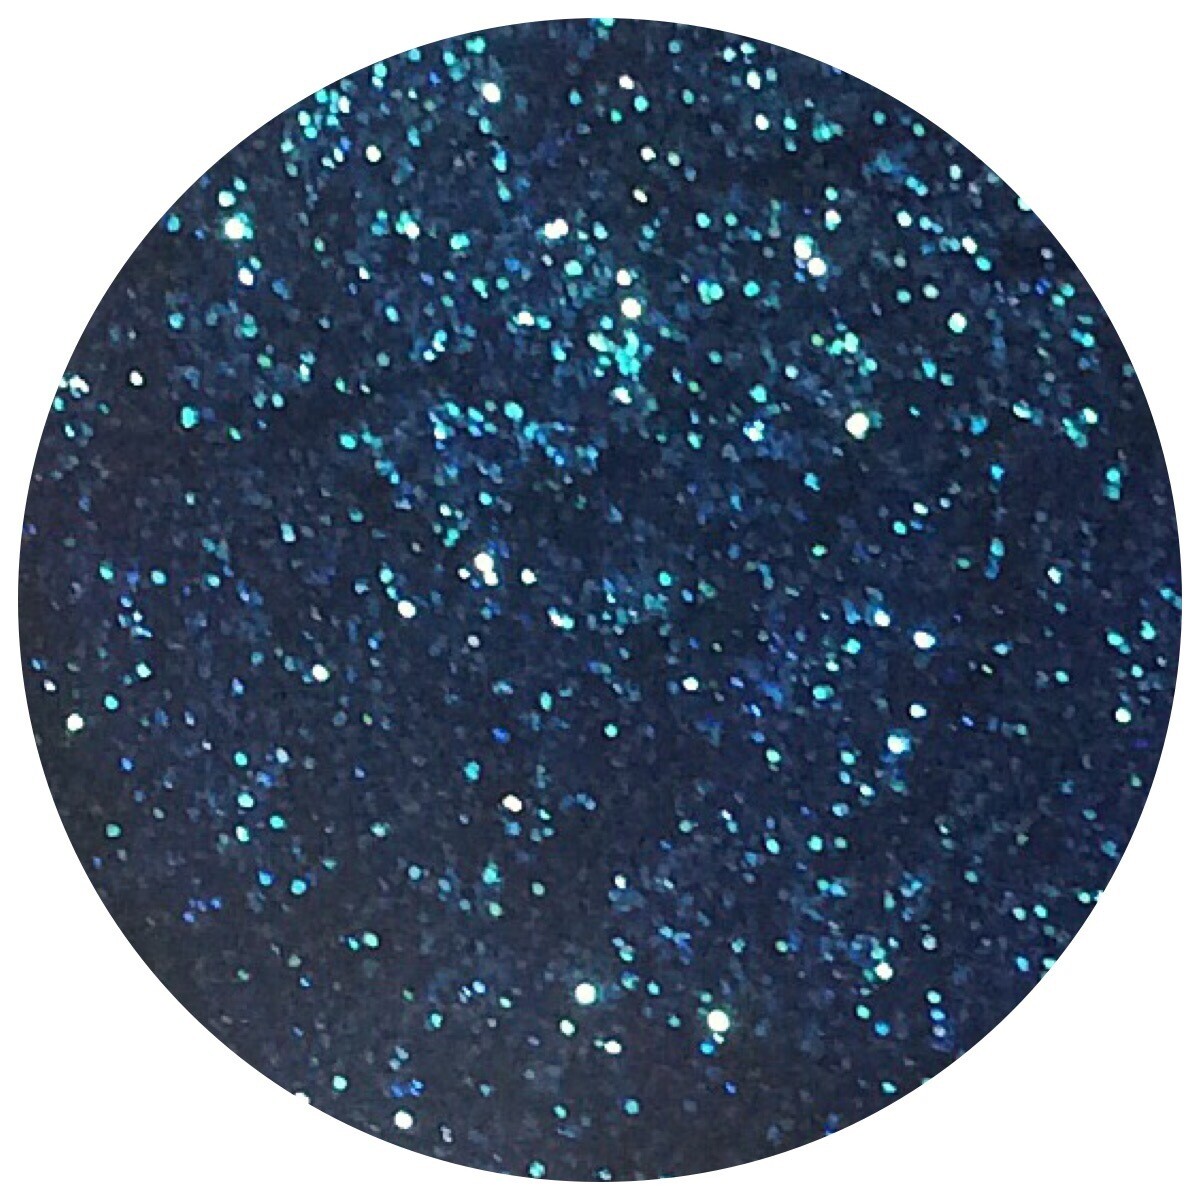 Teal Blue Sea Glitter (NEW)